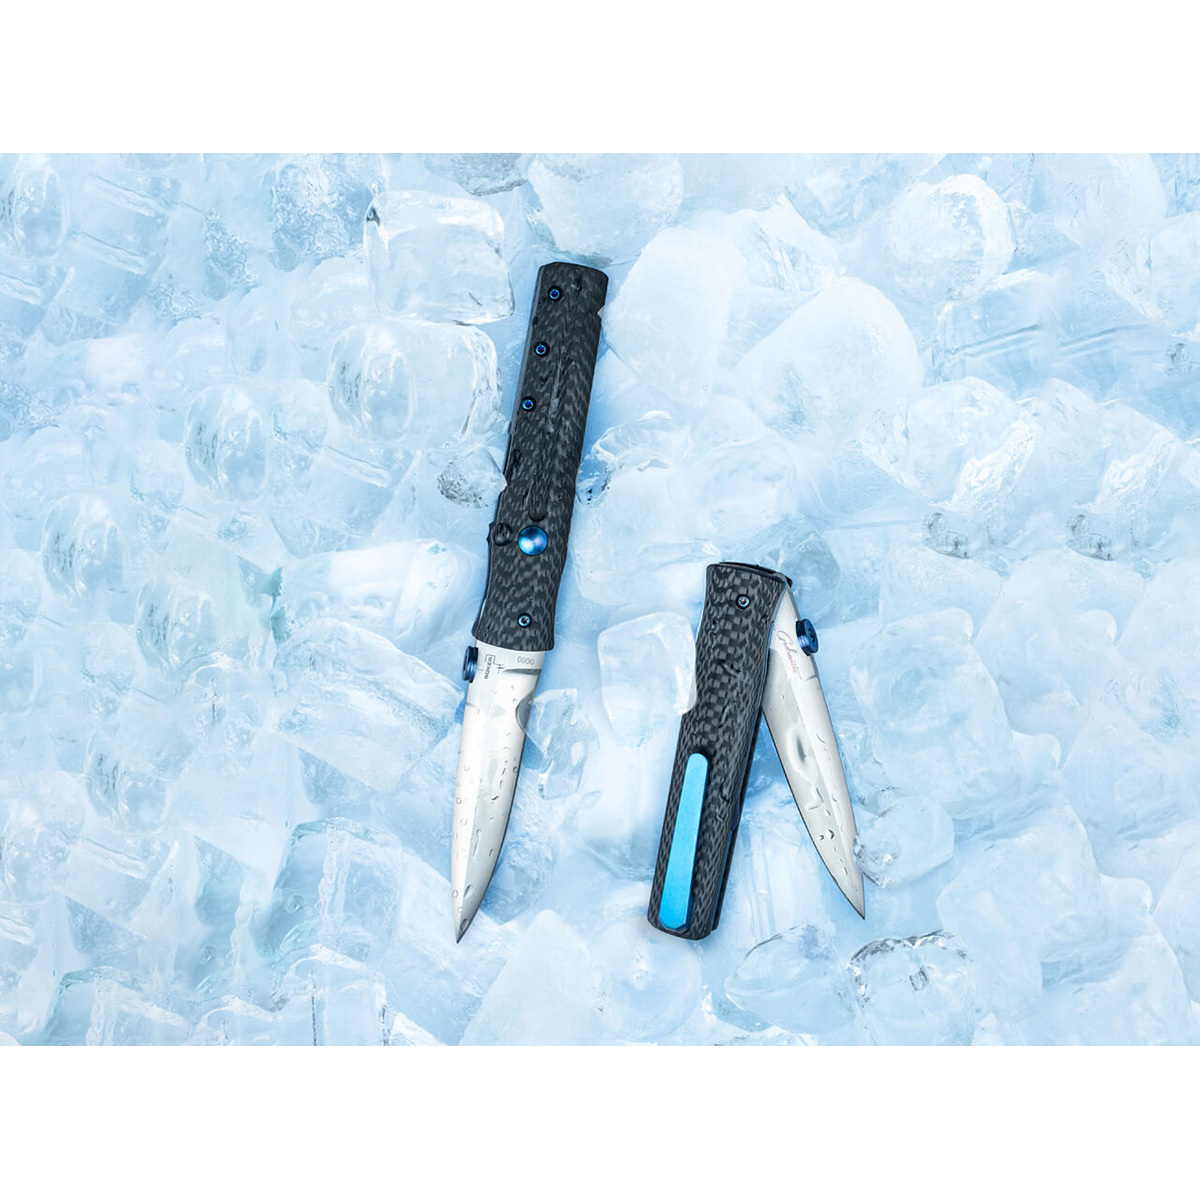  нож Boker IcePick Dagger, сталь VG-10, рукоять Carbon fiber .